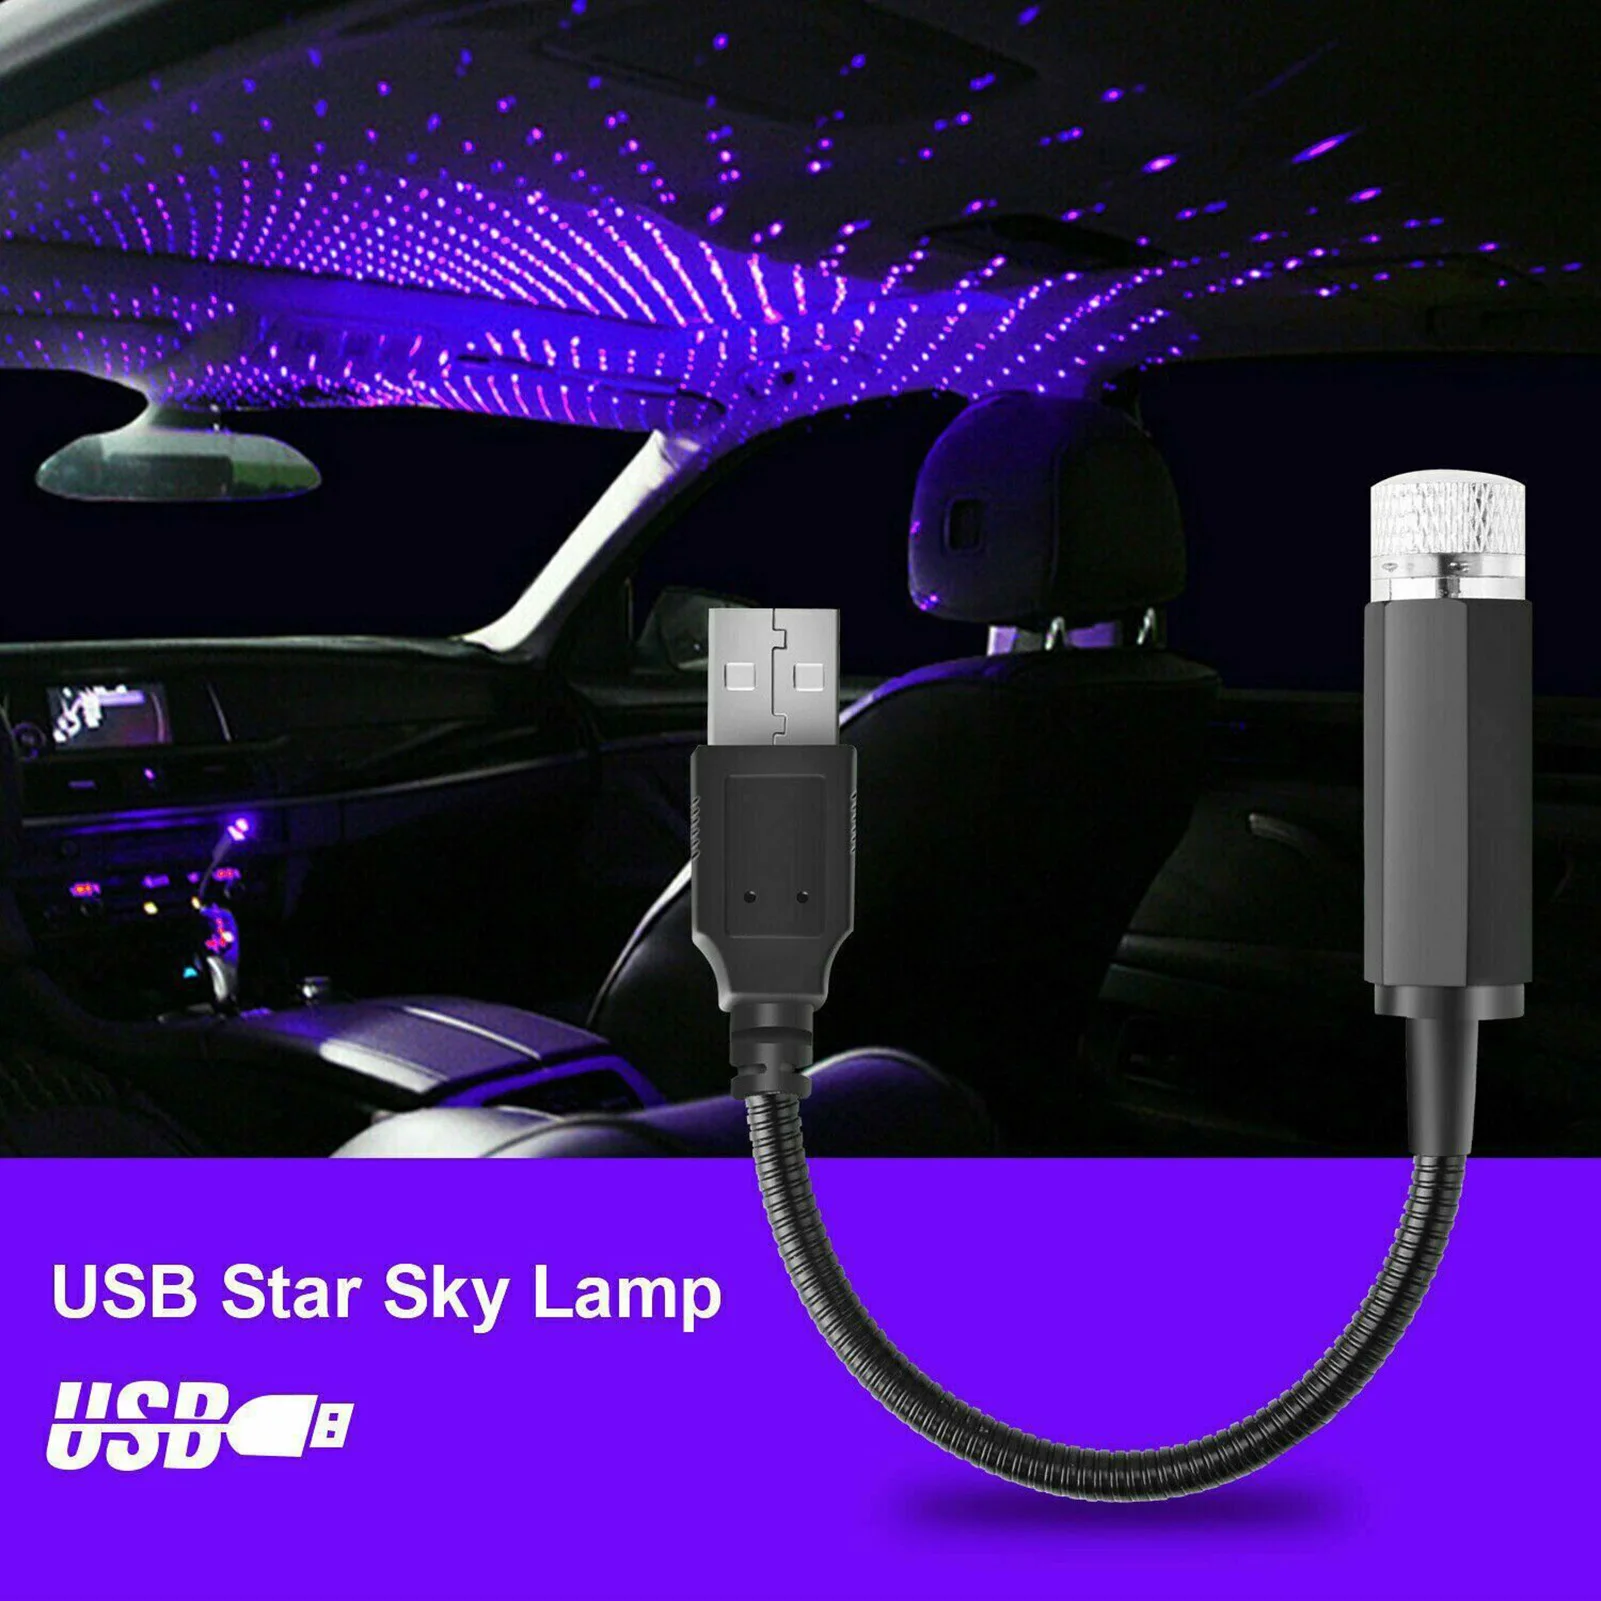 Autó Tető Star Light LED Csillagos Légkör Környezeti Belső Projektor USB-Dekoráció Este lakberendezés Galaxy Fények Acessories 4